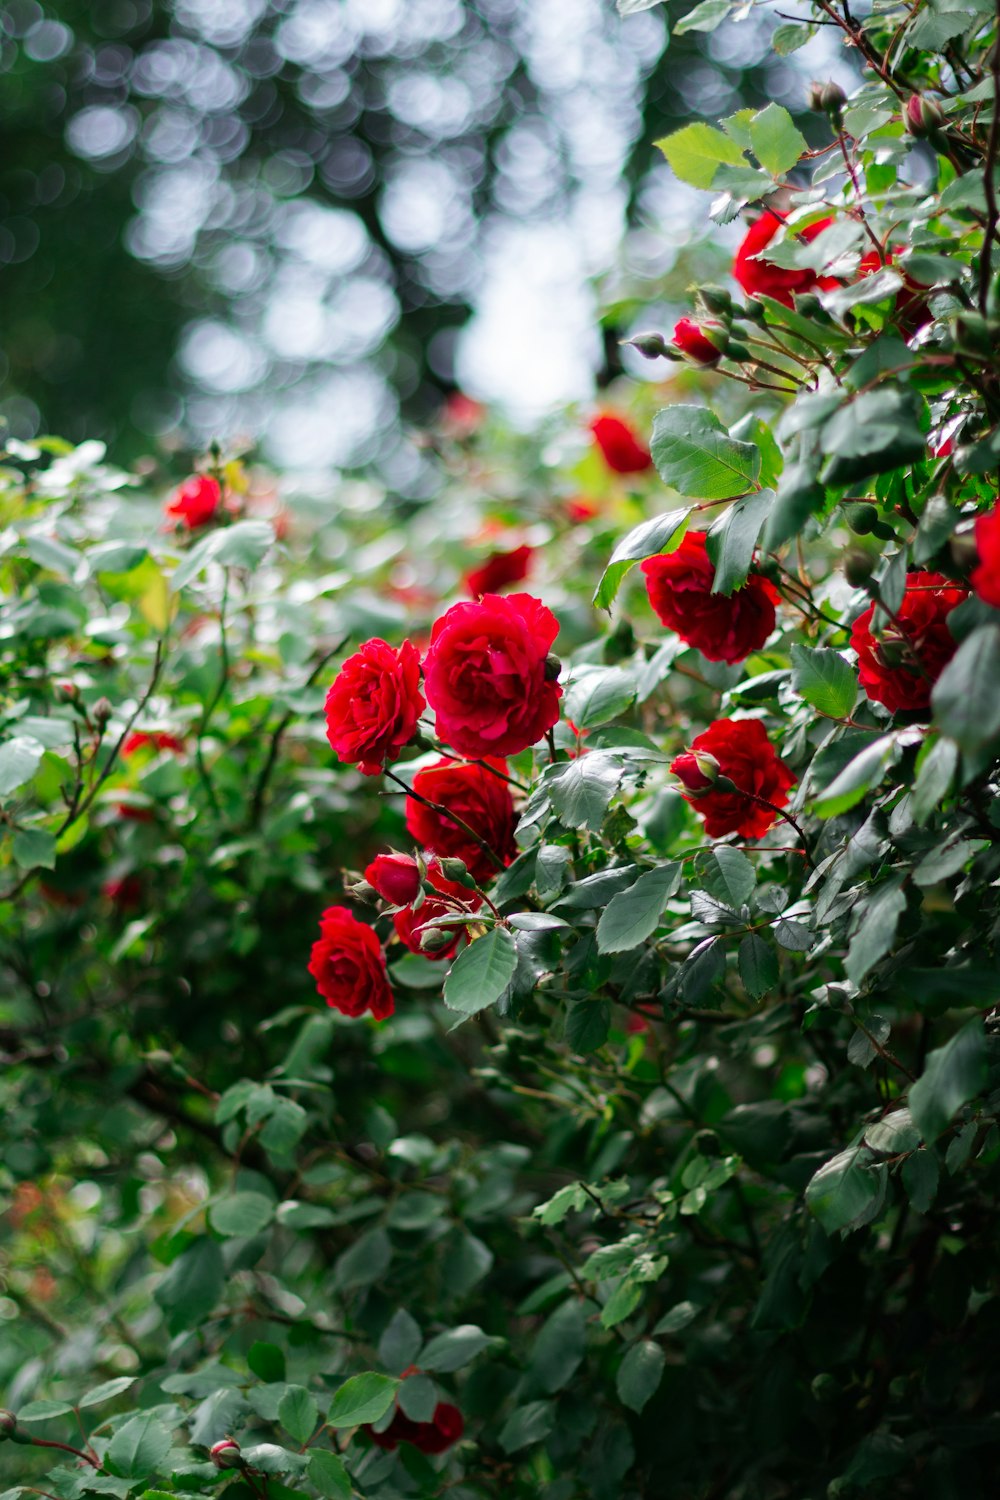 Rose rosse in lente tilt shift